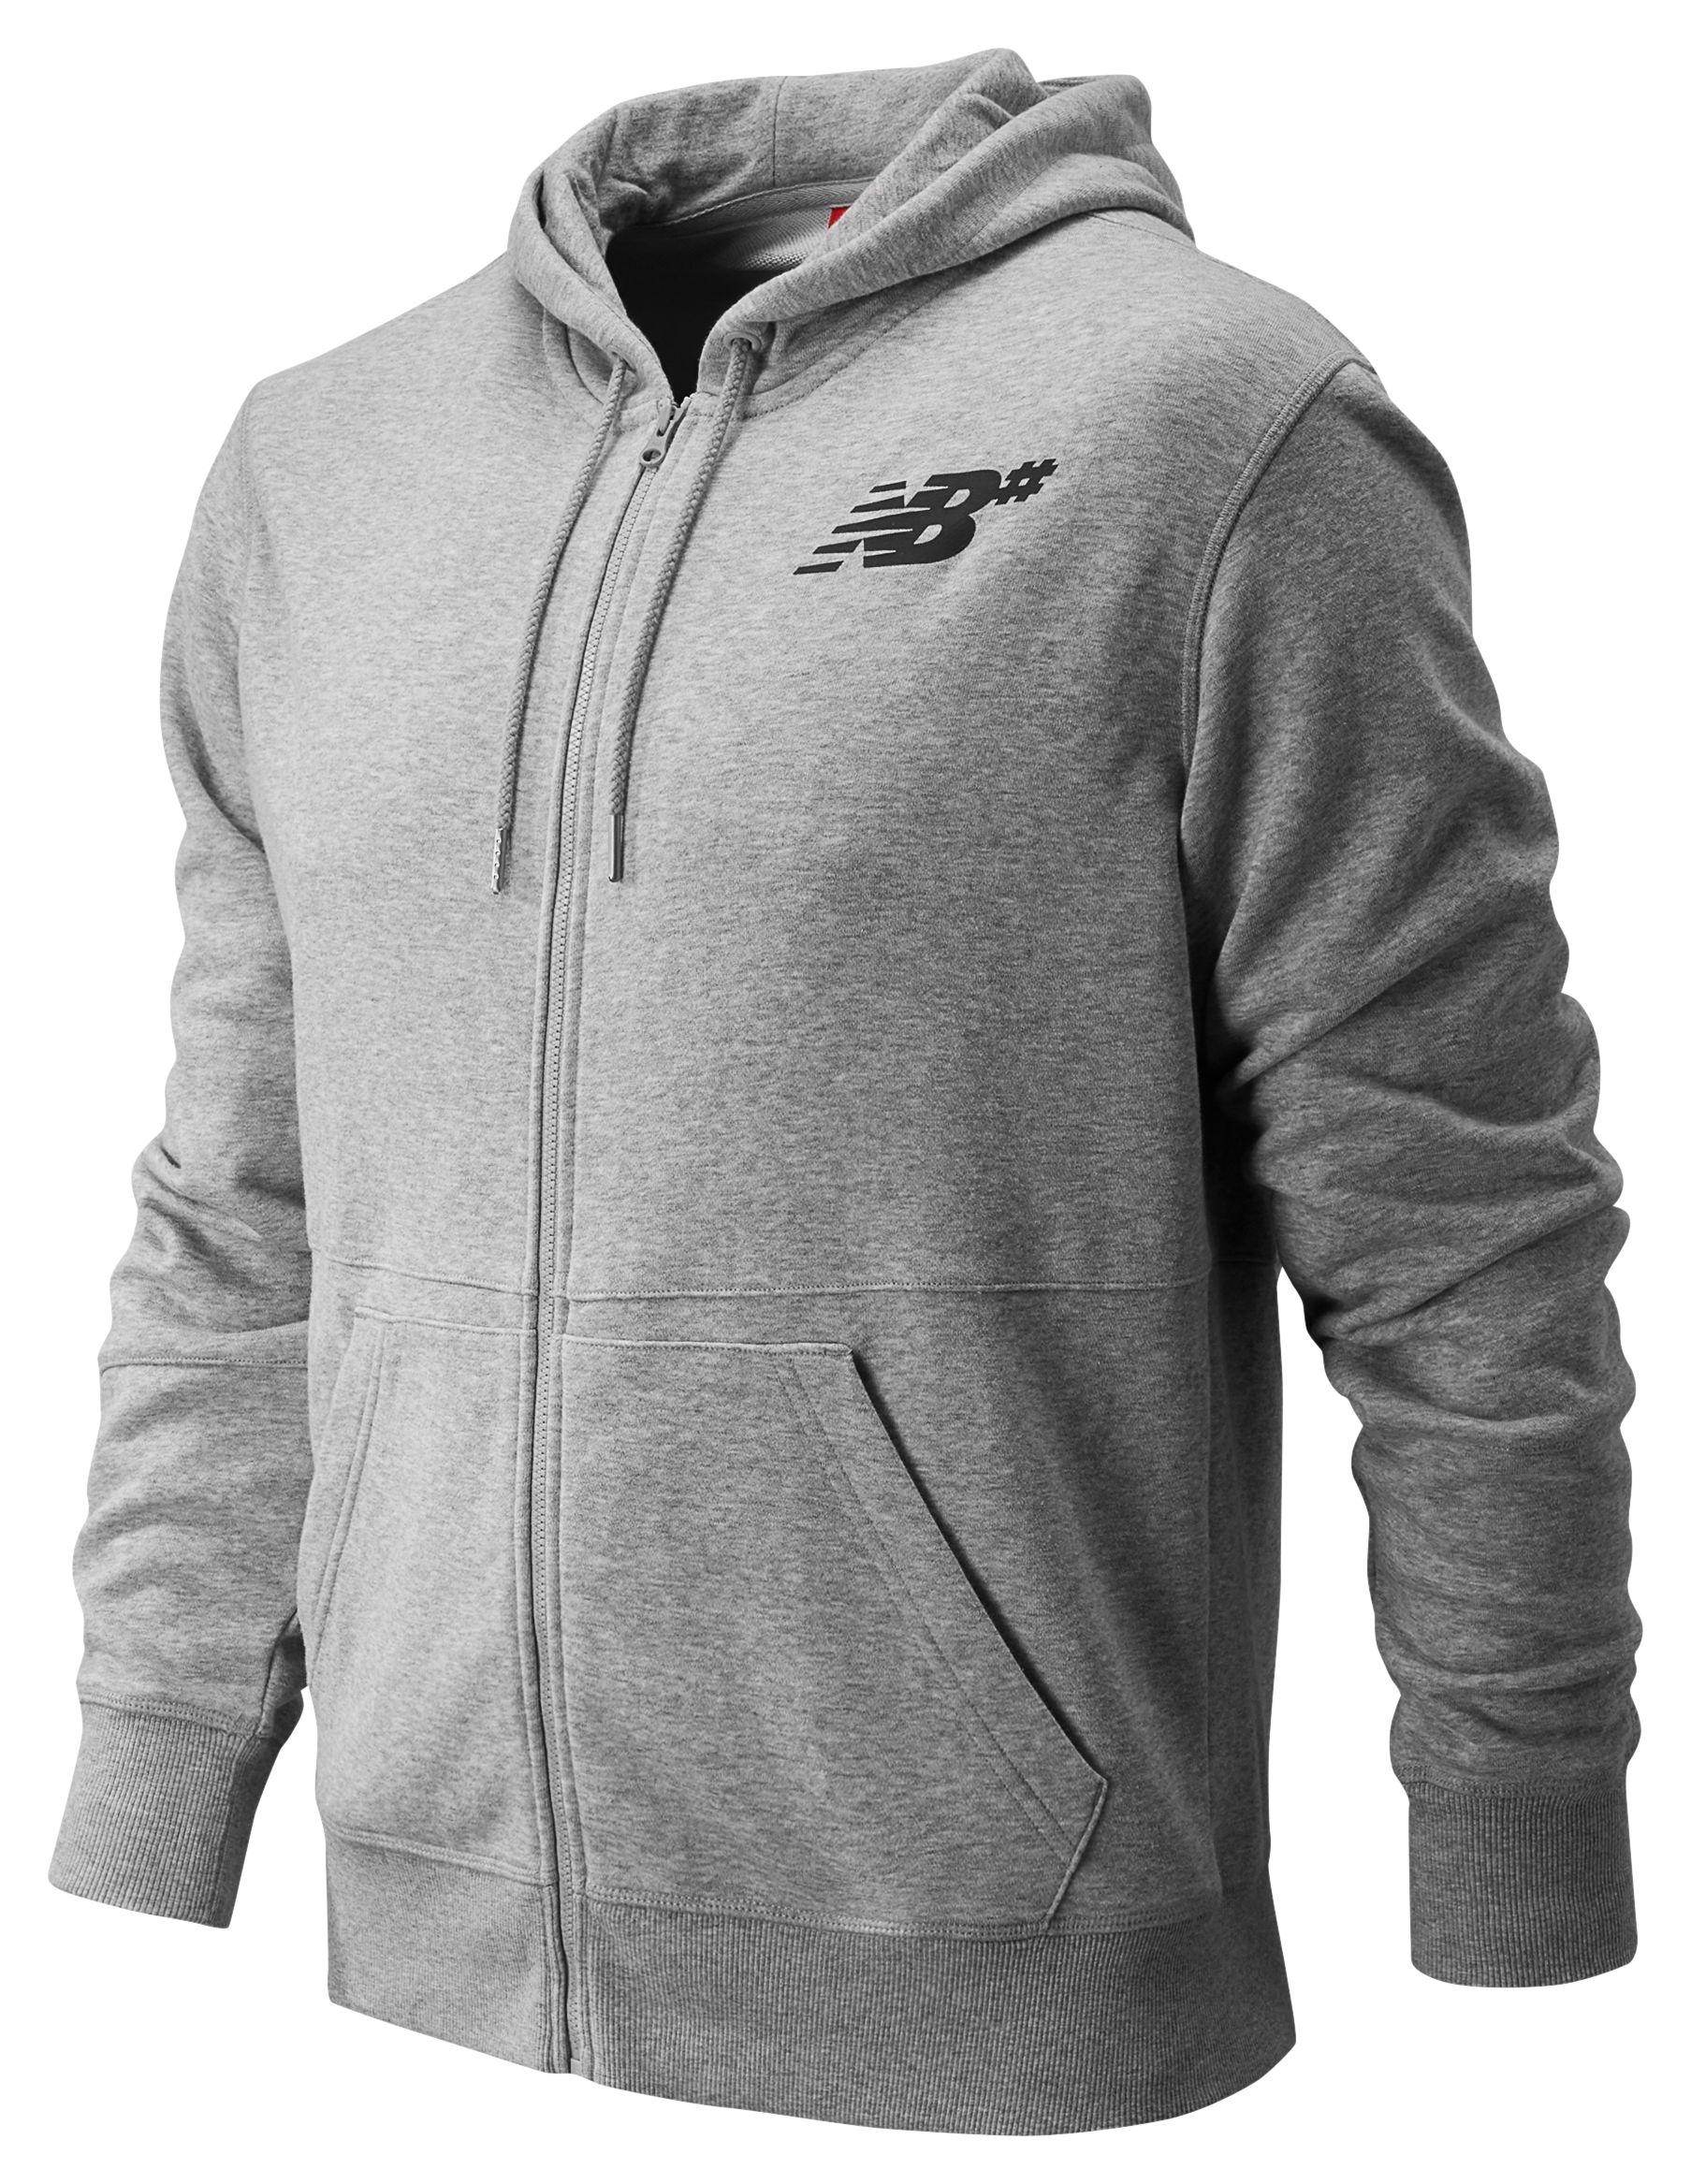 grey zip hoodie mens